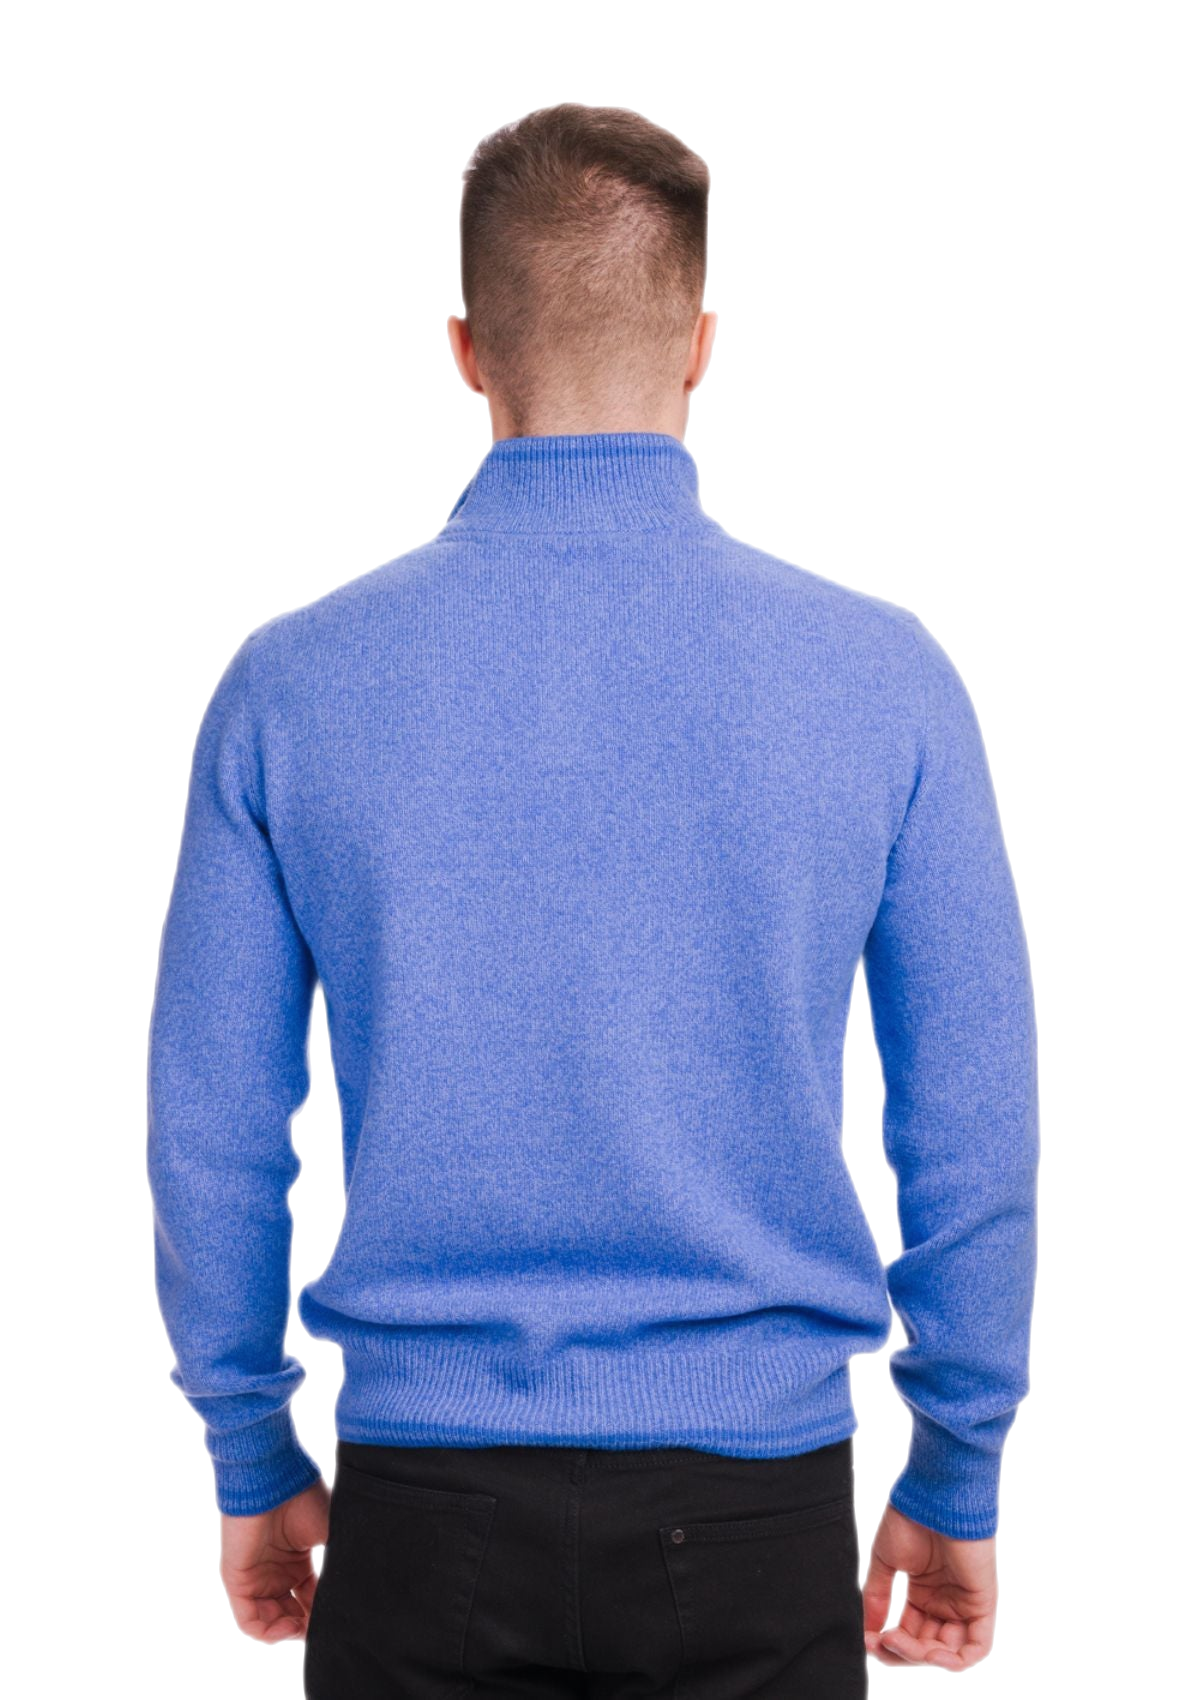 retro maglione in lana merino e cashmere uomo colore azzurro